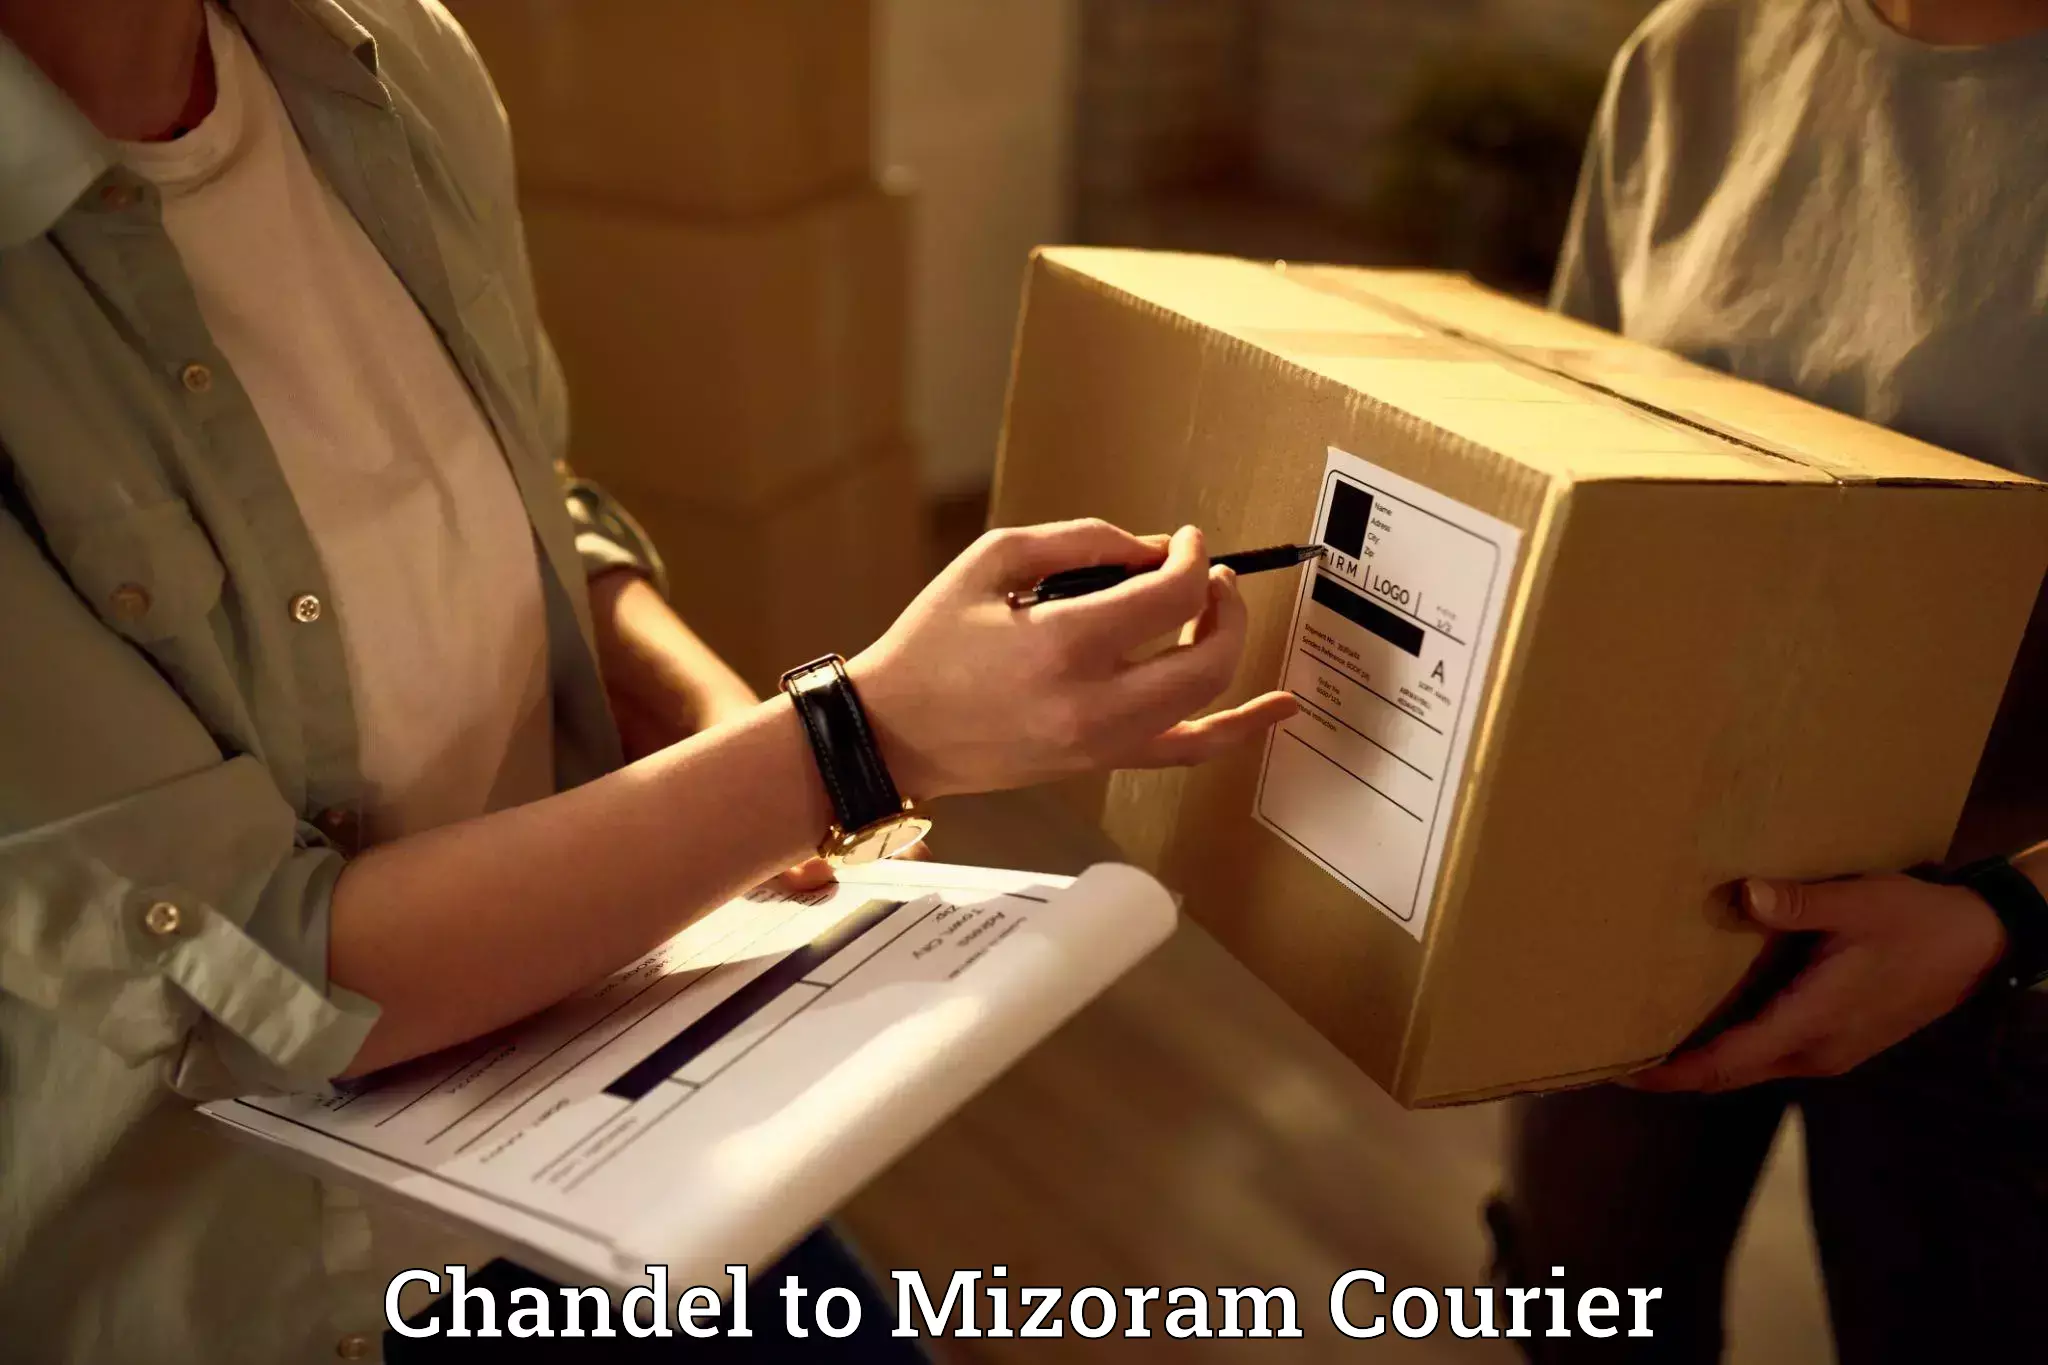 Door-to-door relocation services Chandel to Mizoram